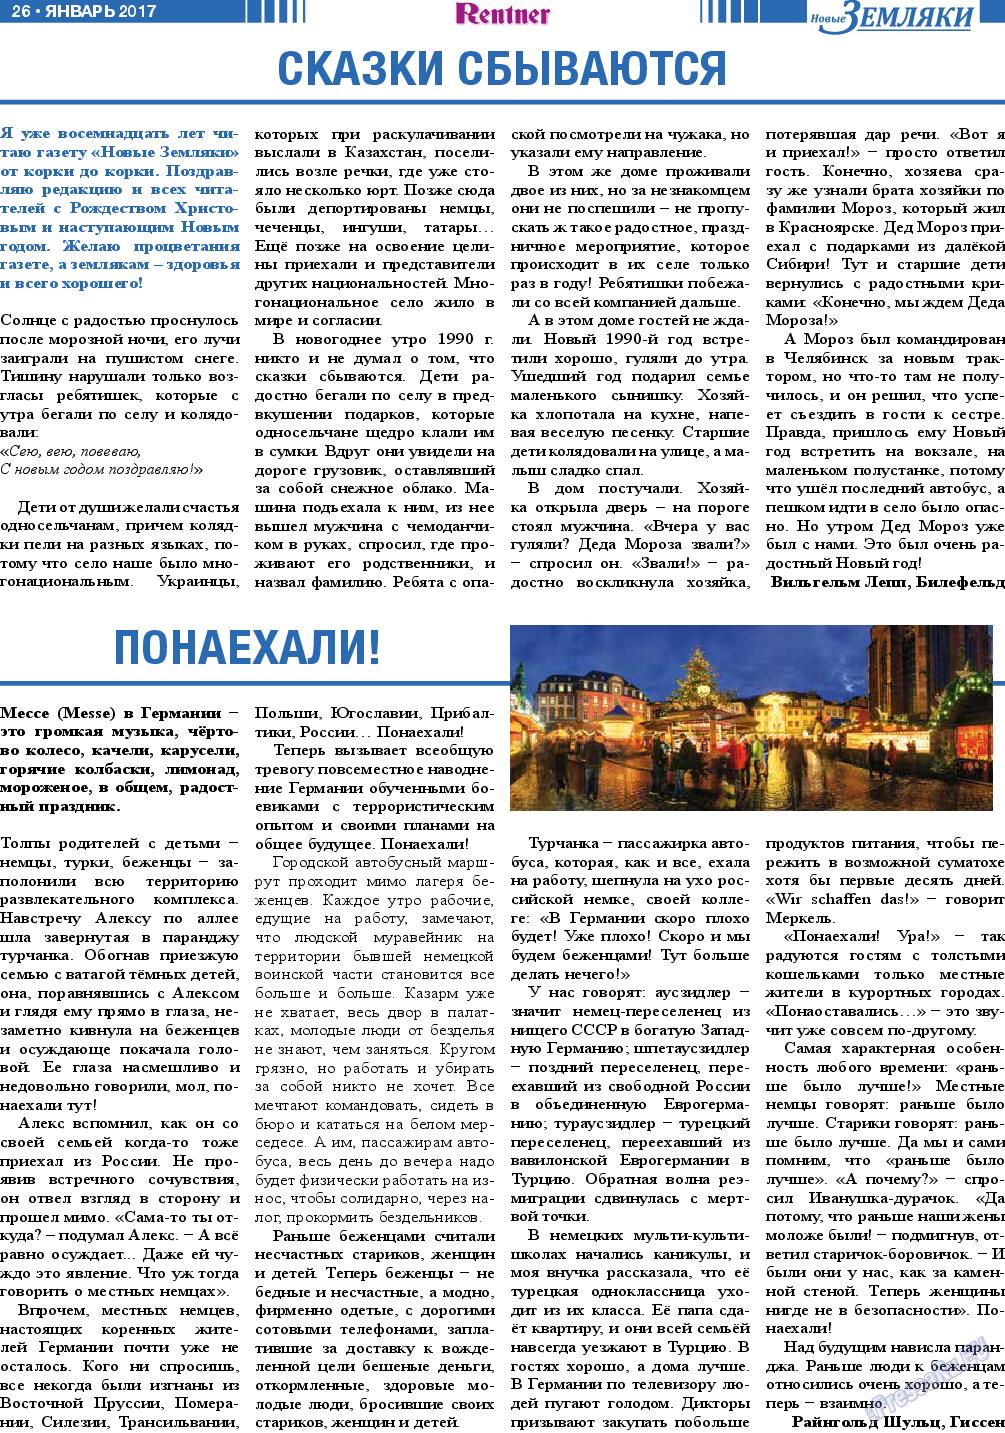 Новые Земляки, газета. 2017 №1 стр.26